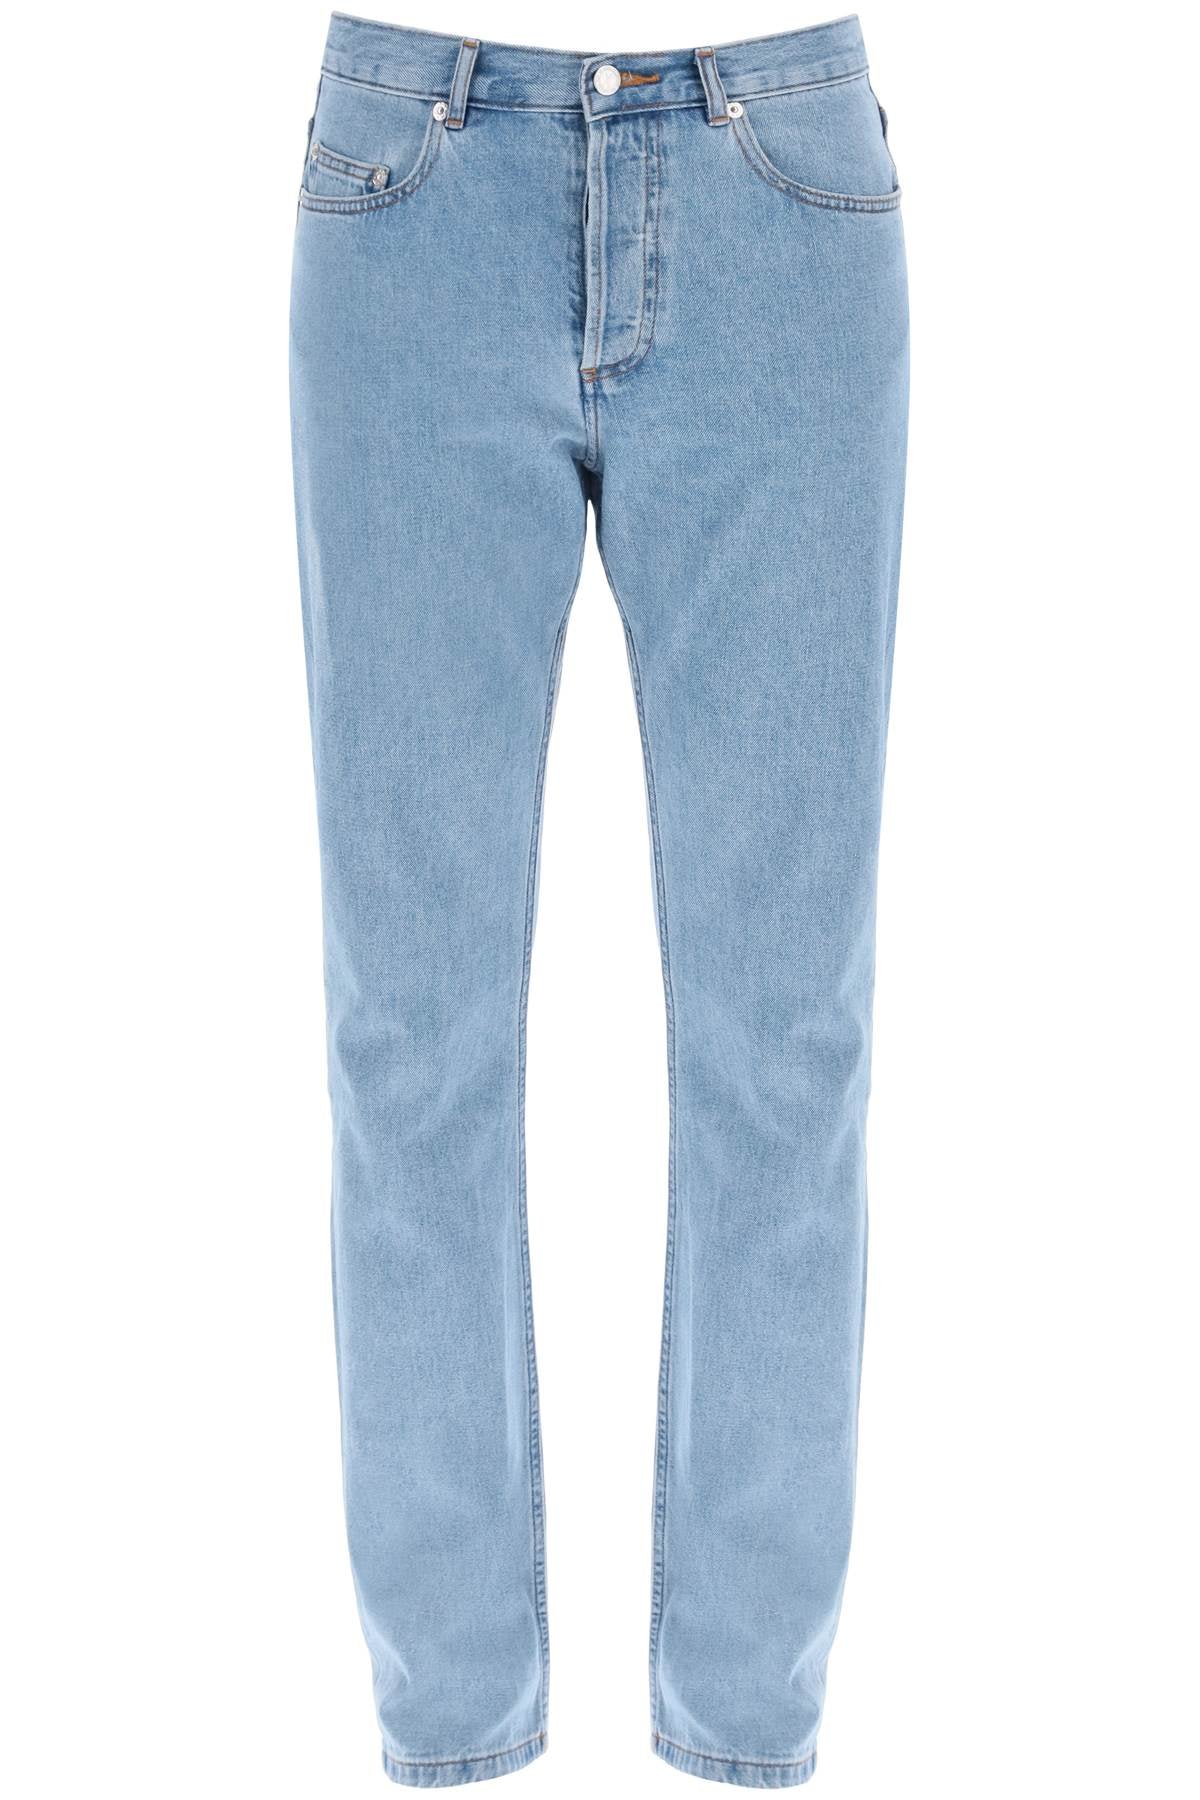 A.p.c. jeans regular standard-0